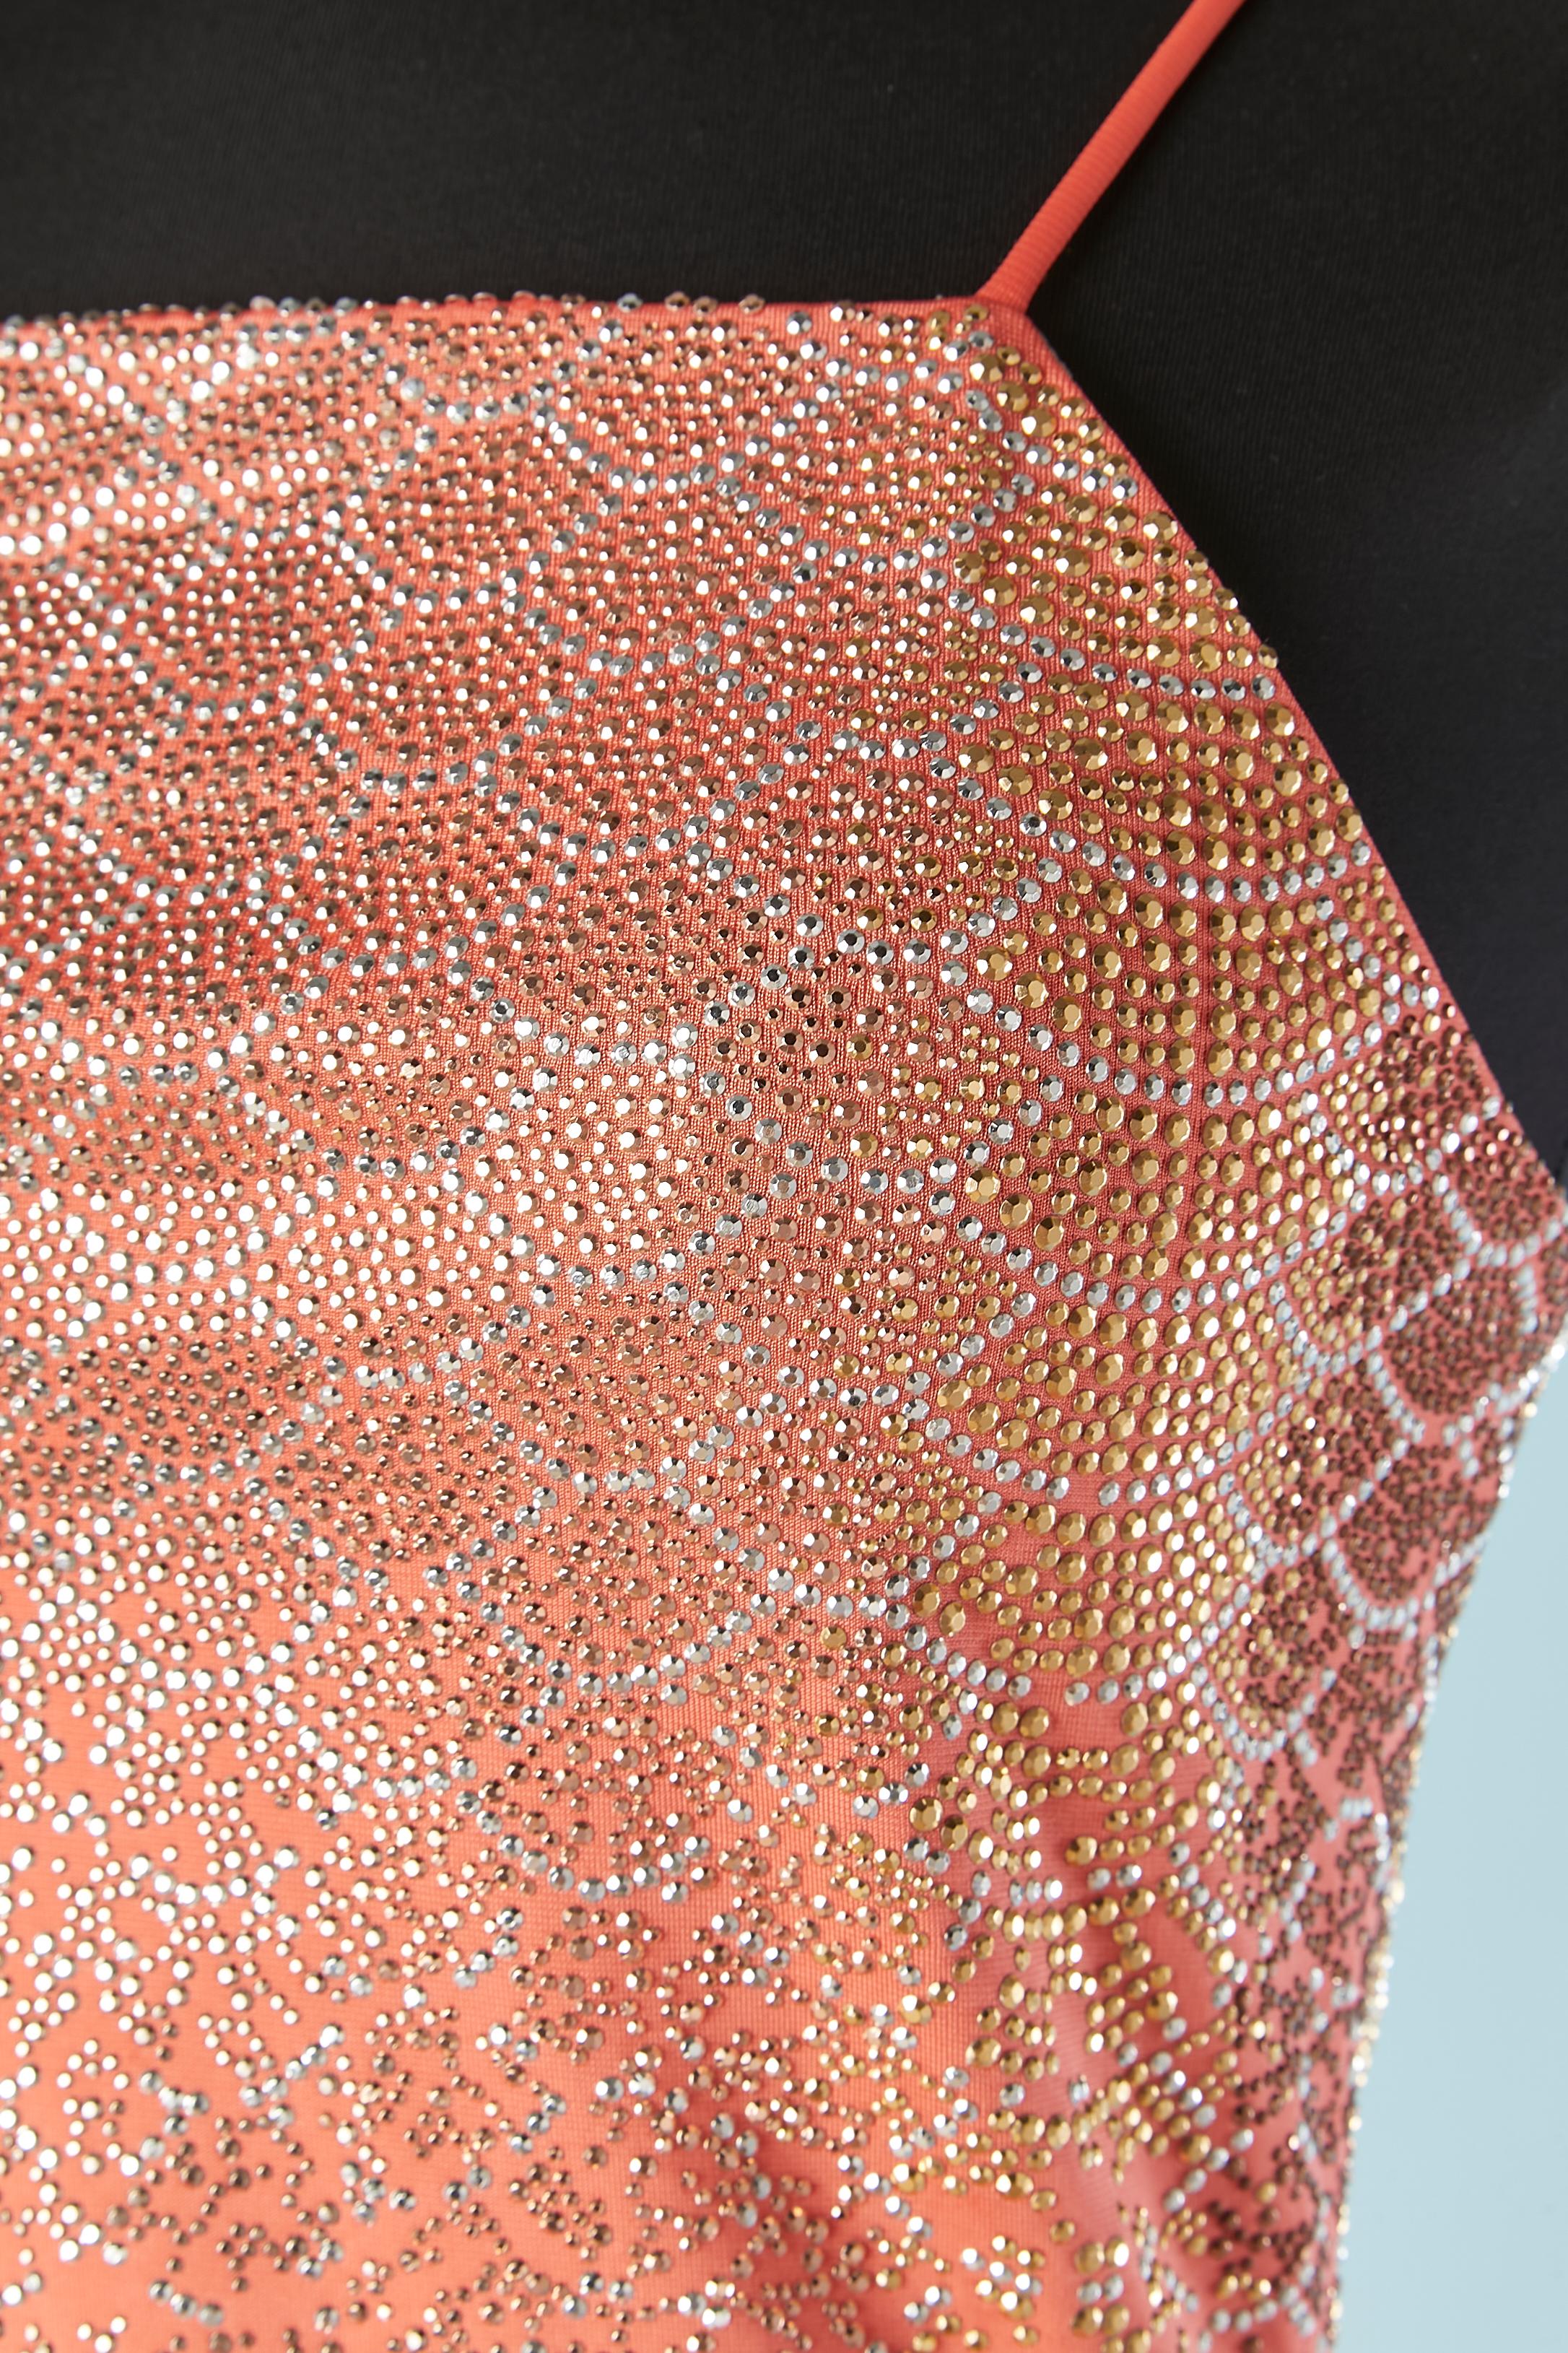 Robe de soirée rose saumon avec application de clous de trois couleurs (or, argent et cuivre).
Composition du tissu : 92% rayonne, 8% élasthanne 
Zip  et un crochet au milieu du dos. Fentes sur les deux côtés, longueur = 75 cm
Nouveau avec étiquette